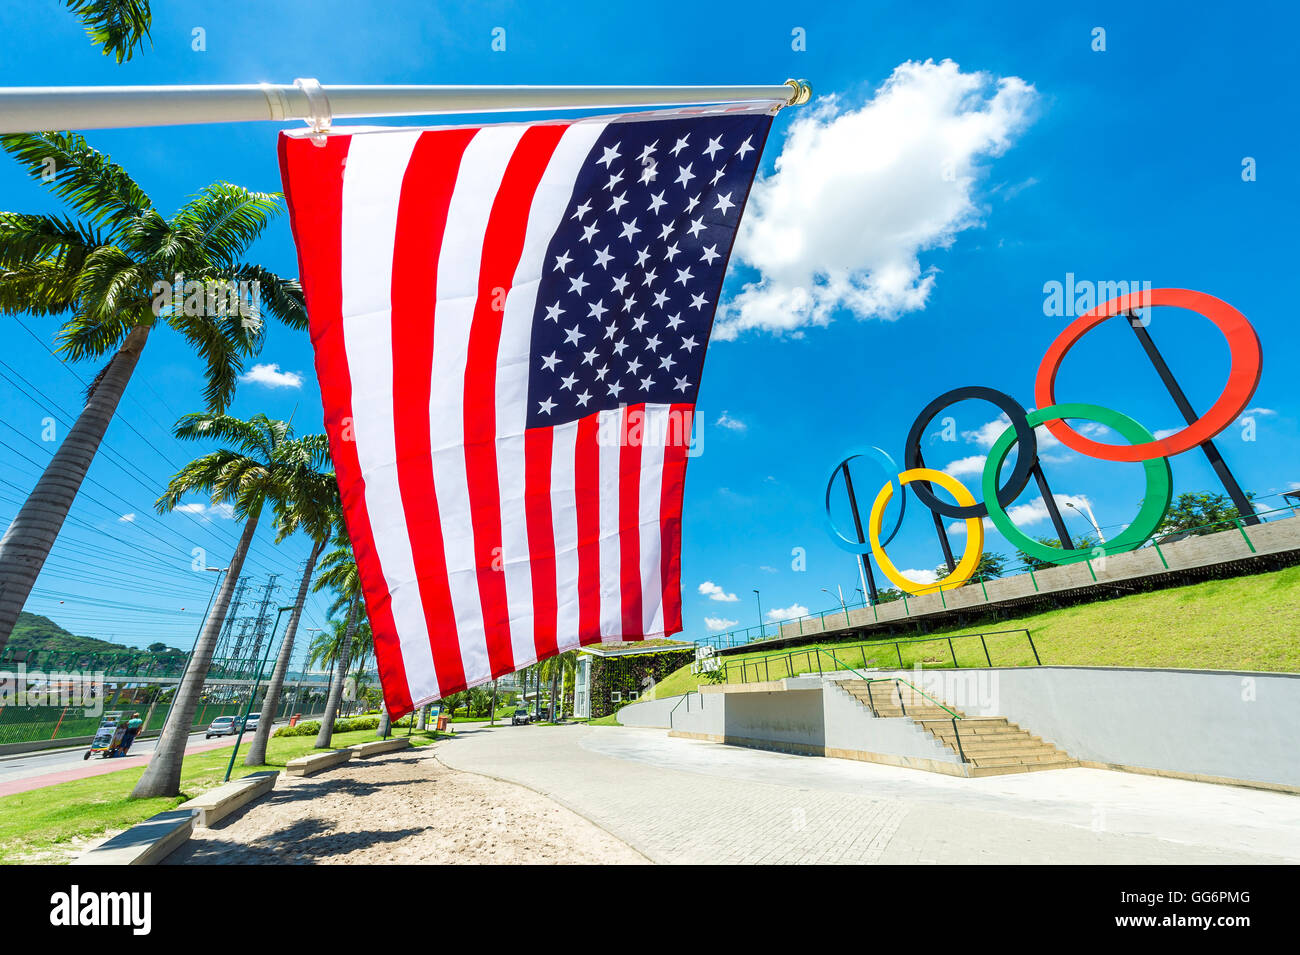 RIO DE JANEIRO - le 18 mars 2016 : un drapeau américain est en face d'un affichage des anneaux olympiques dans la région de Parque Madureira Park. Banque D'Images